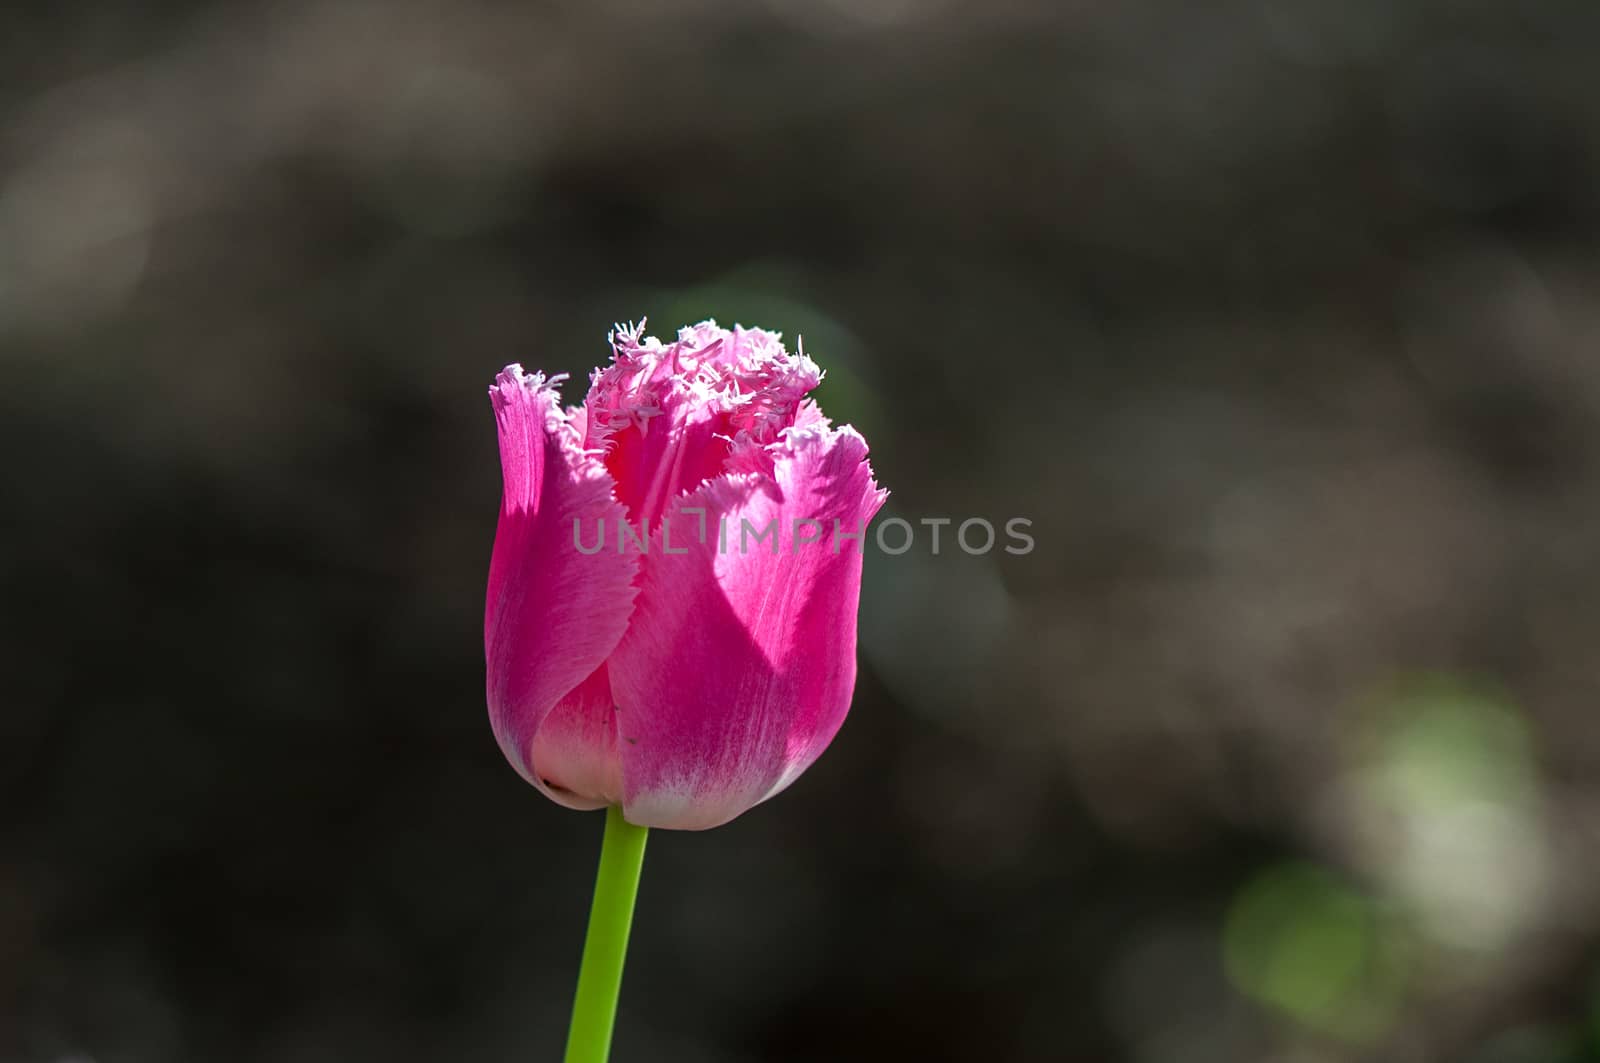 The pink tulip in Beijing Botanical Garden.